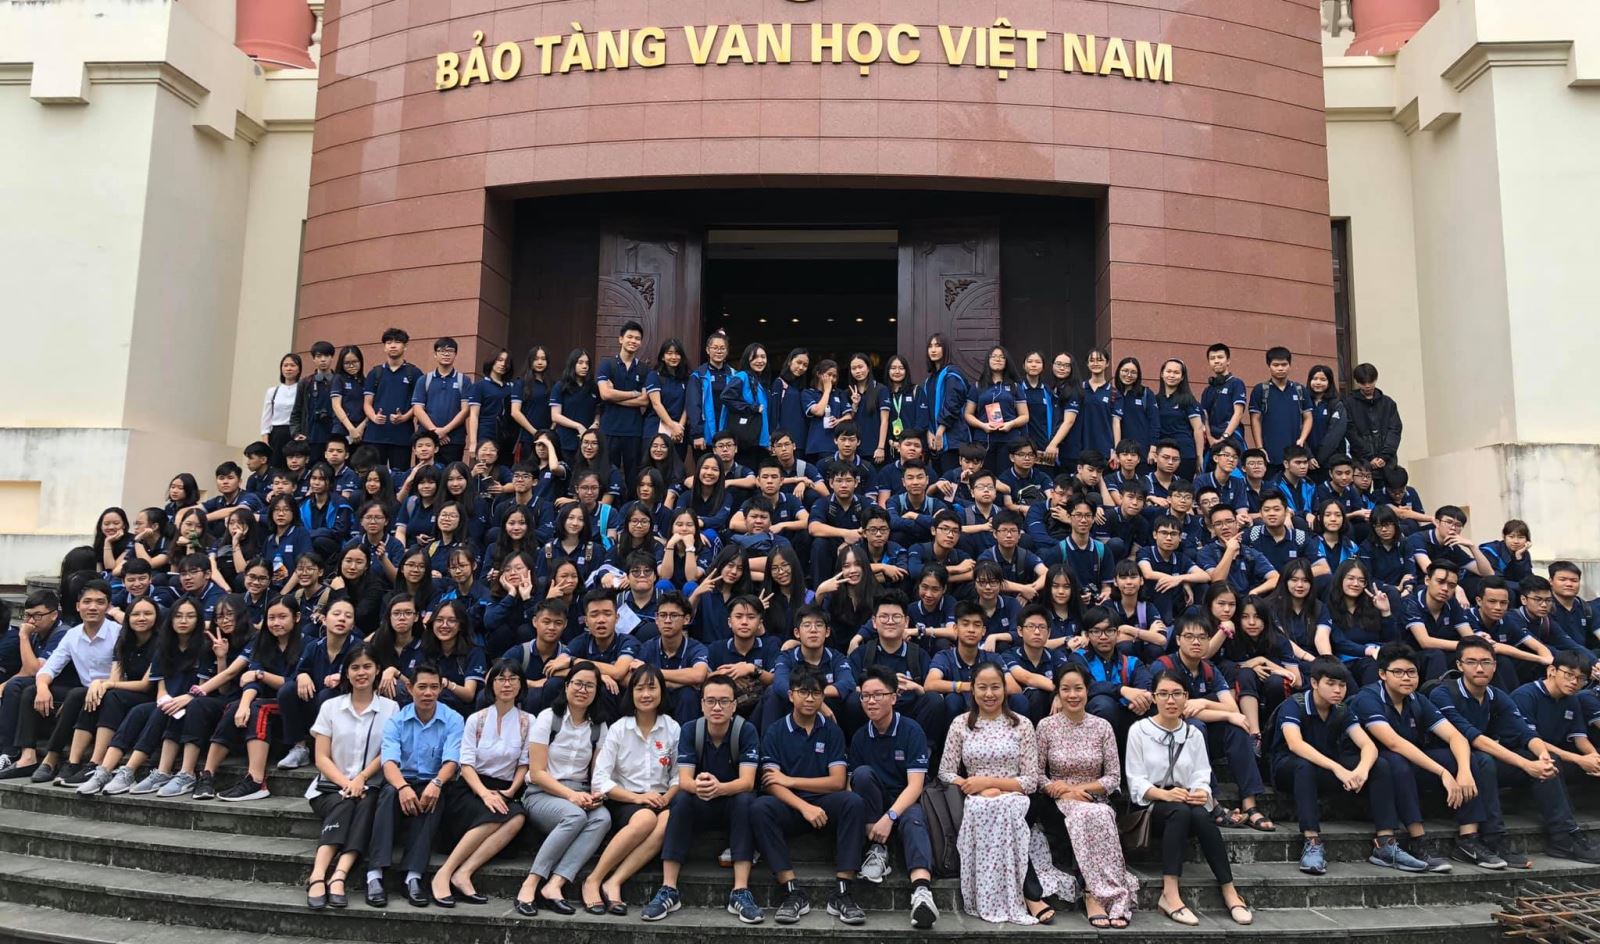 Theo chân Khối 10 thăm Bảo tàng Văn học Việt